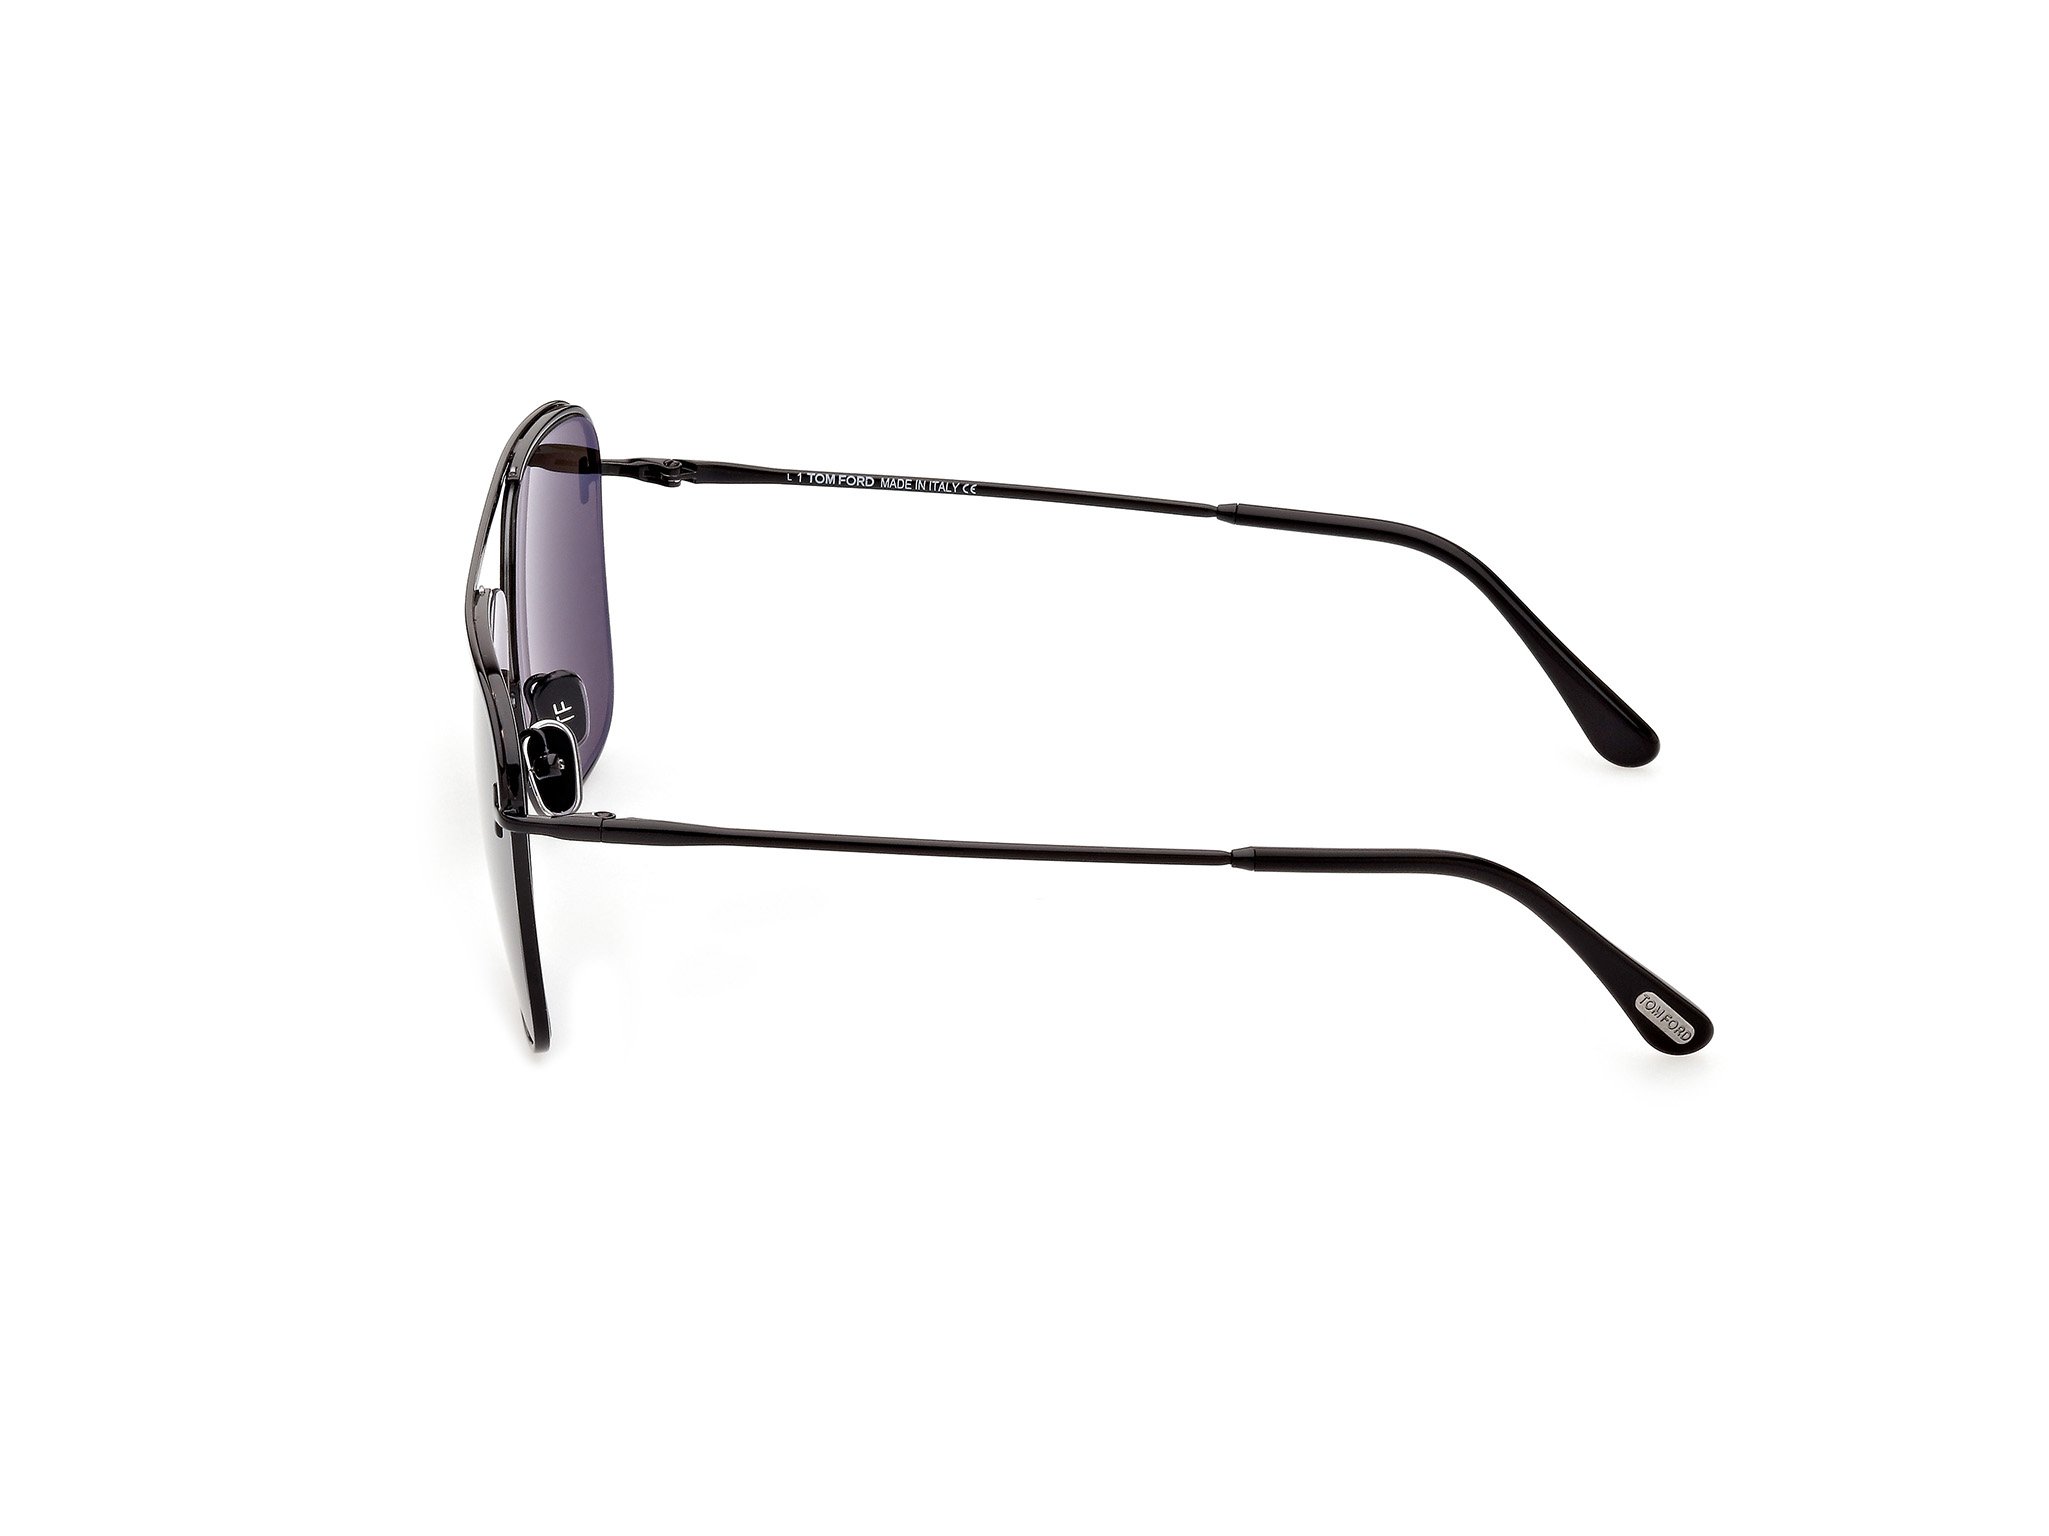 Das Bild zeigt die Sonnenbrille Nolan FT0925 von der Marke Tom Ford in schwarz seitlich